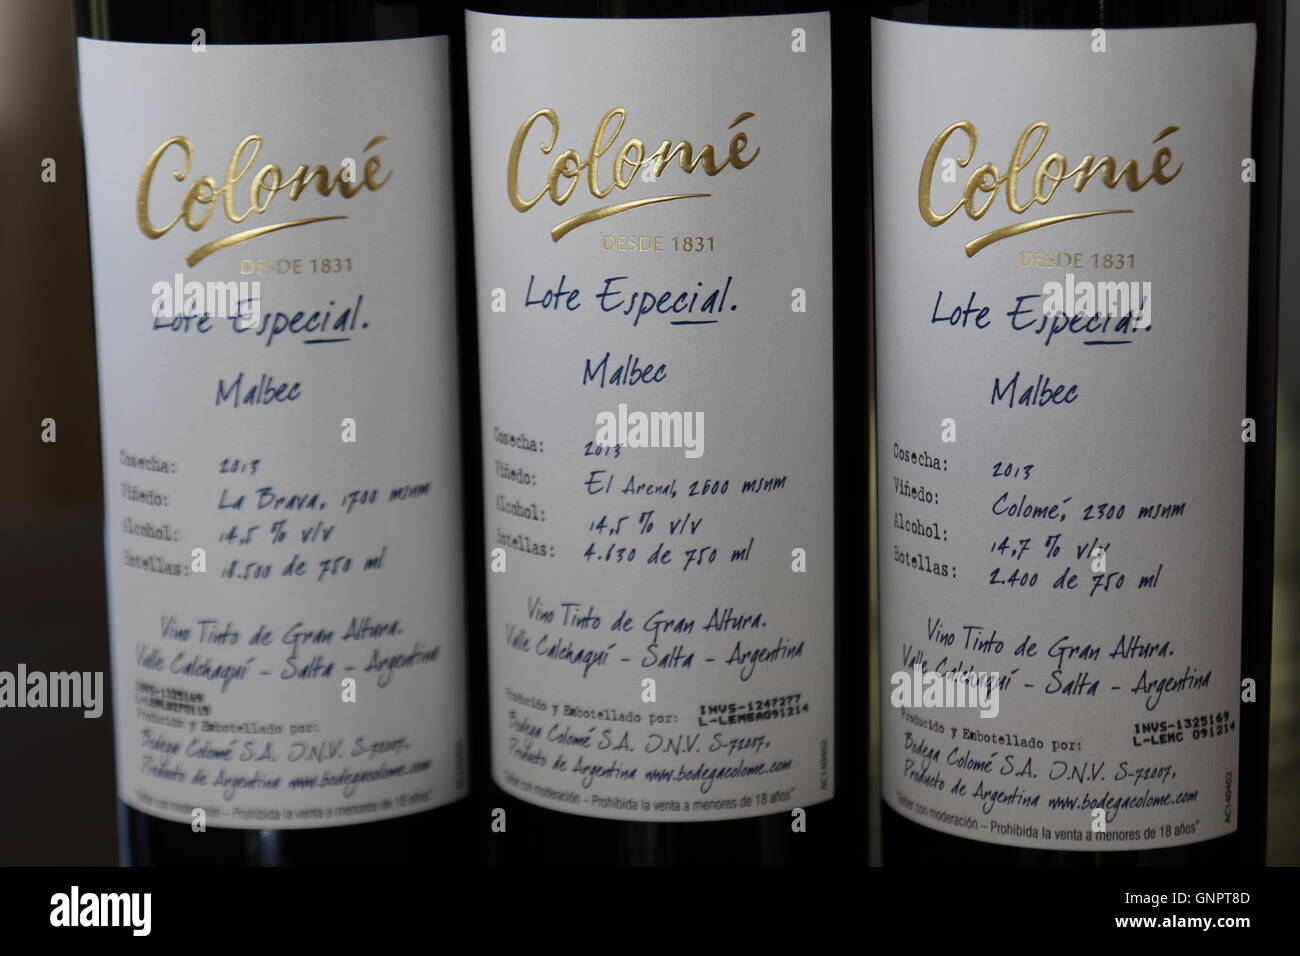 Tre bottiglie di vino 'Malbec' provenienti da vigneti diversi a Bodega y Estancia Colomé, Salta, Argentina Foto Stock